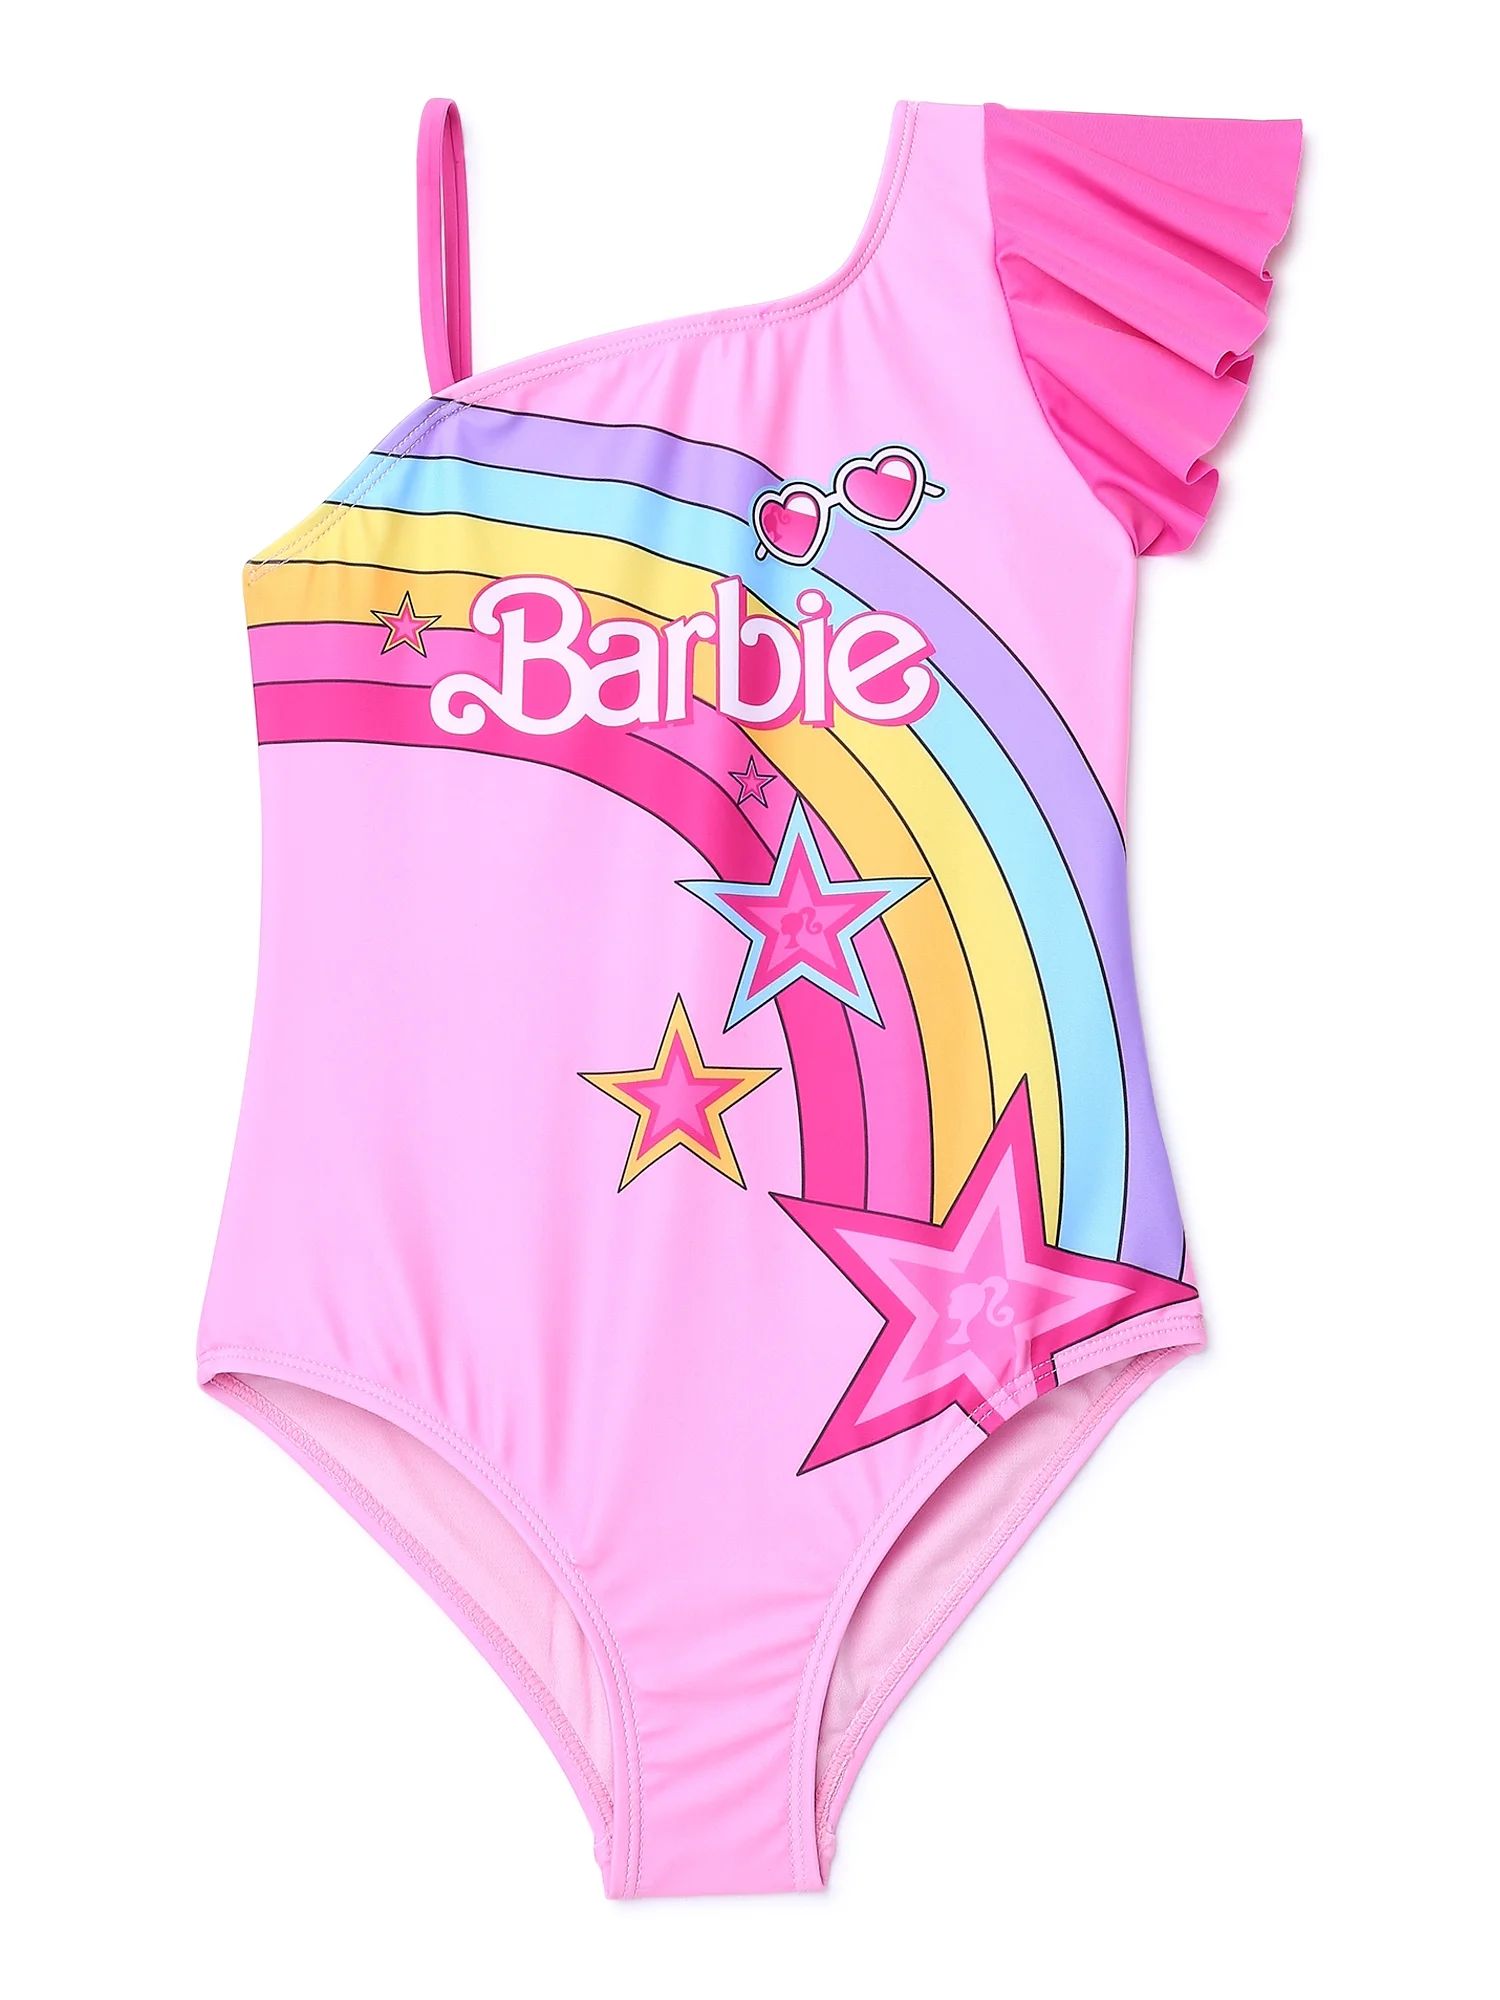 Barbie Swimsuit, One Piece, Sizes 4/5 - 7/8 | Walmart (US)